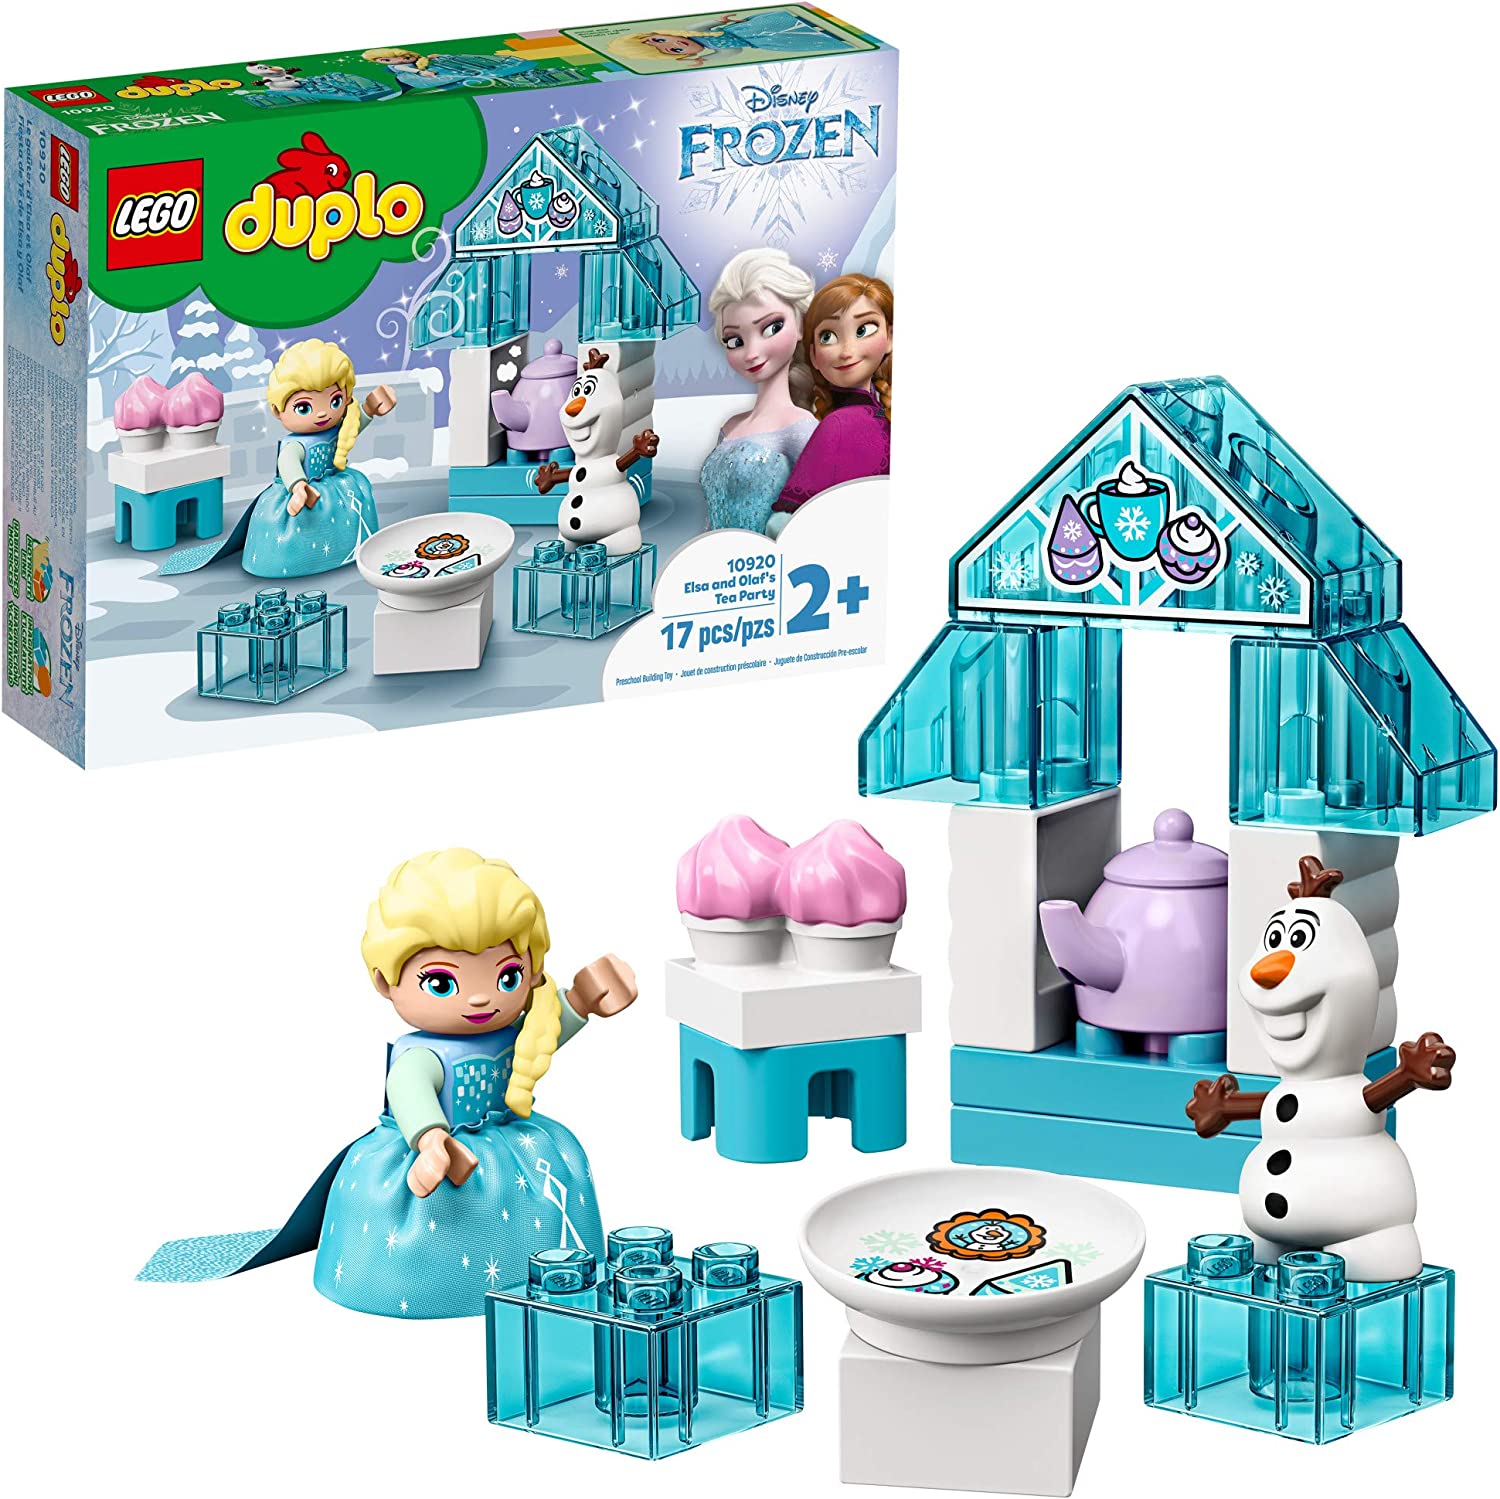 Lego Duplo 10920 - A Festa do Chá da Elsa e do Olaf - Foto 0